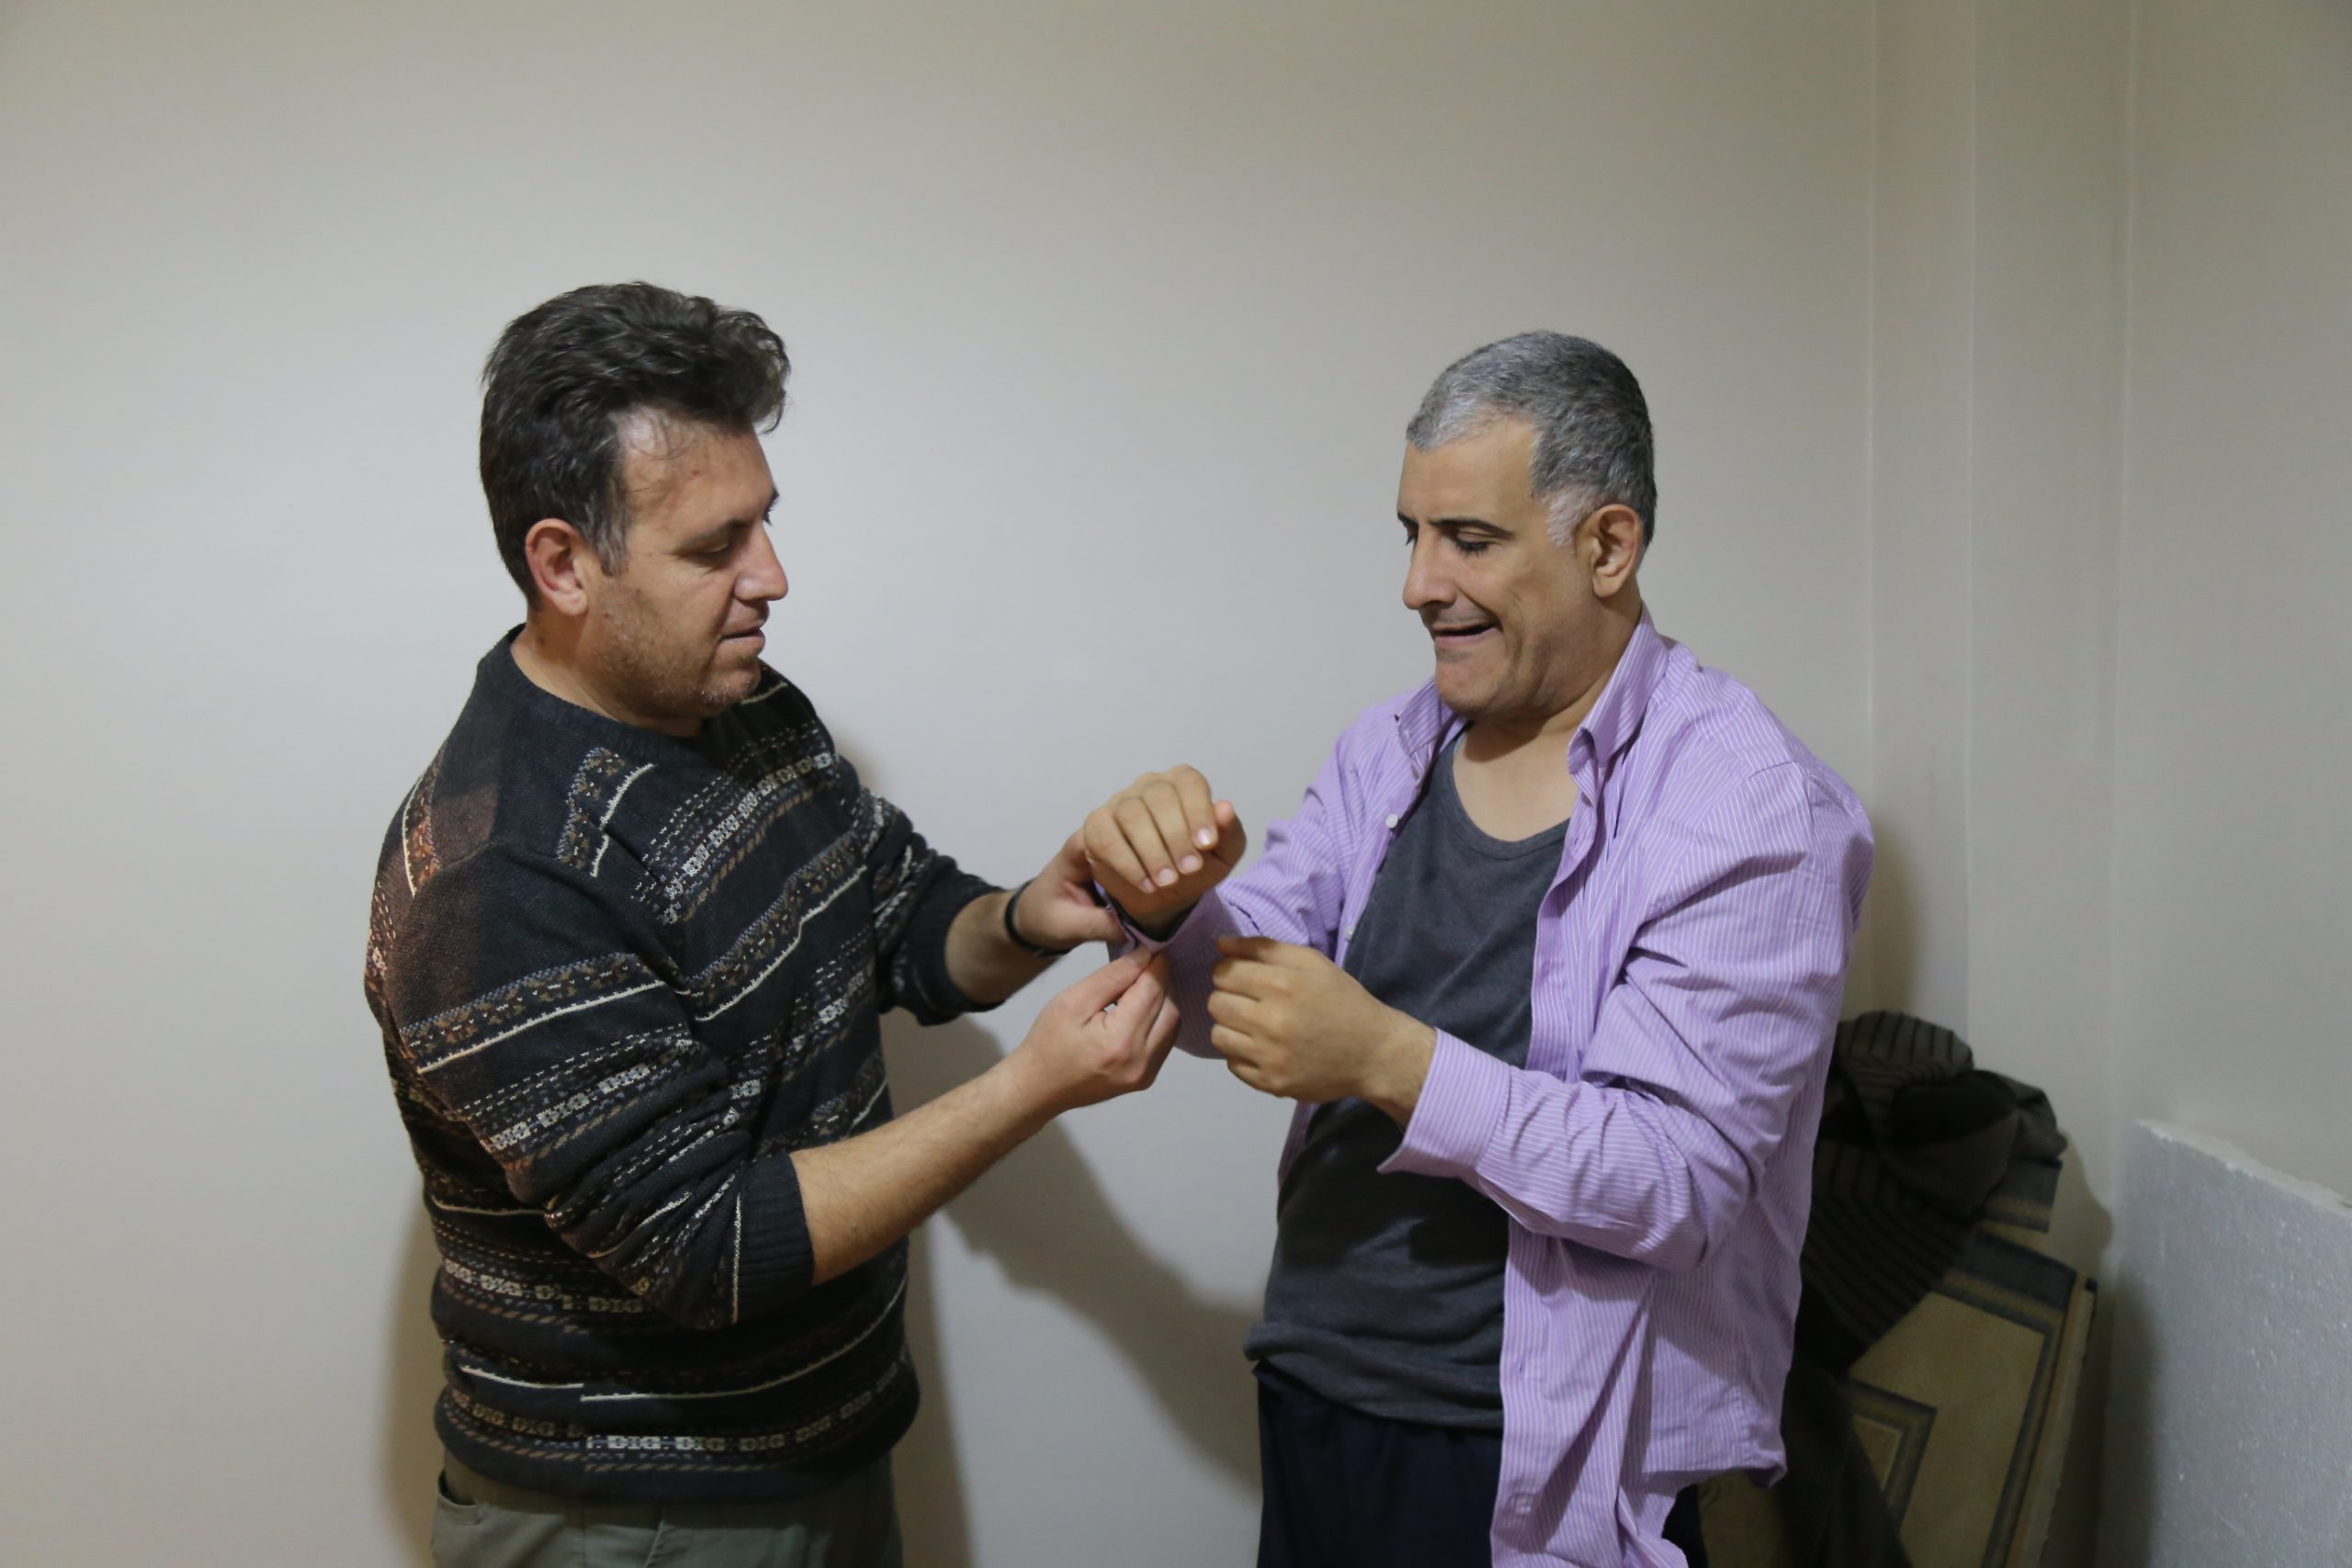 Elif Kısa’nın serbest bırakılmasını isteyen işitme engelli Ahmet kampanya başlatıyor